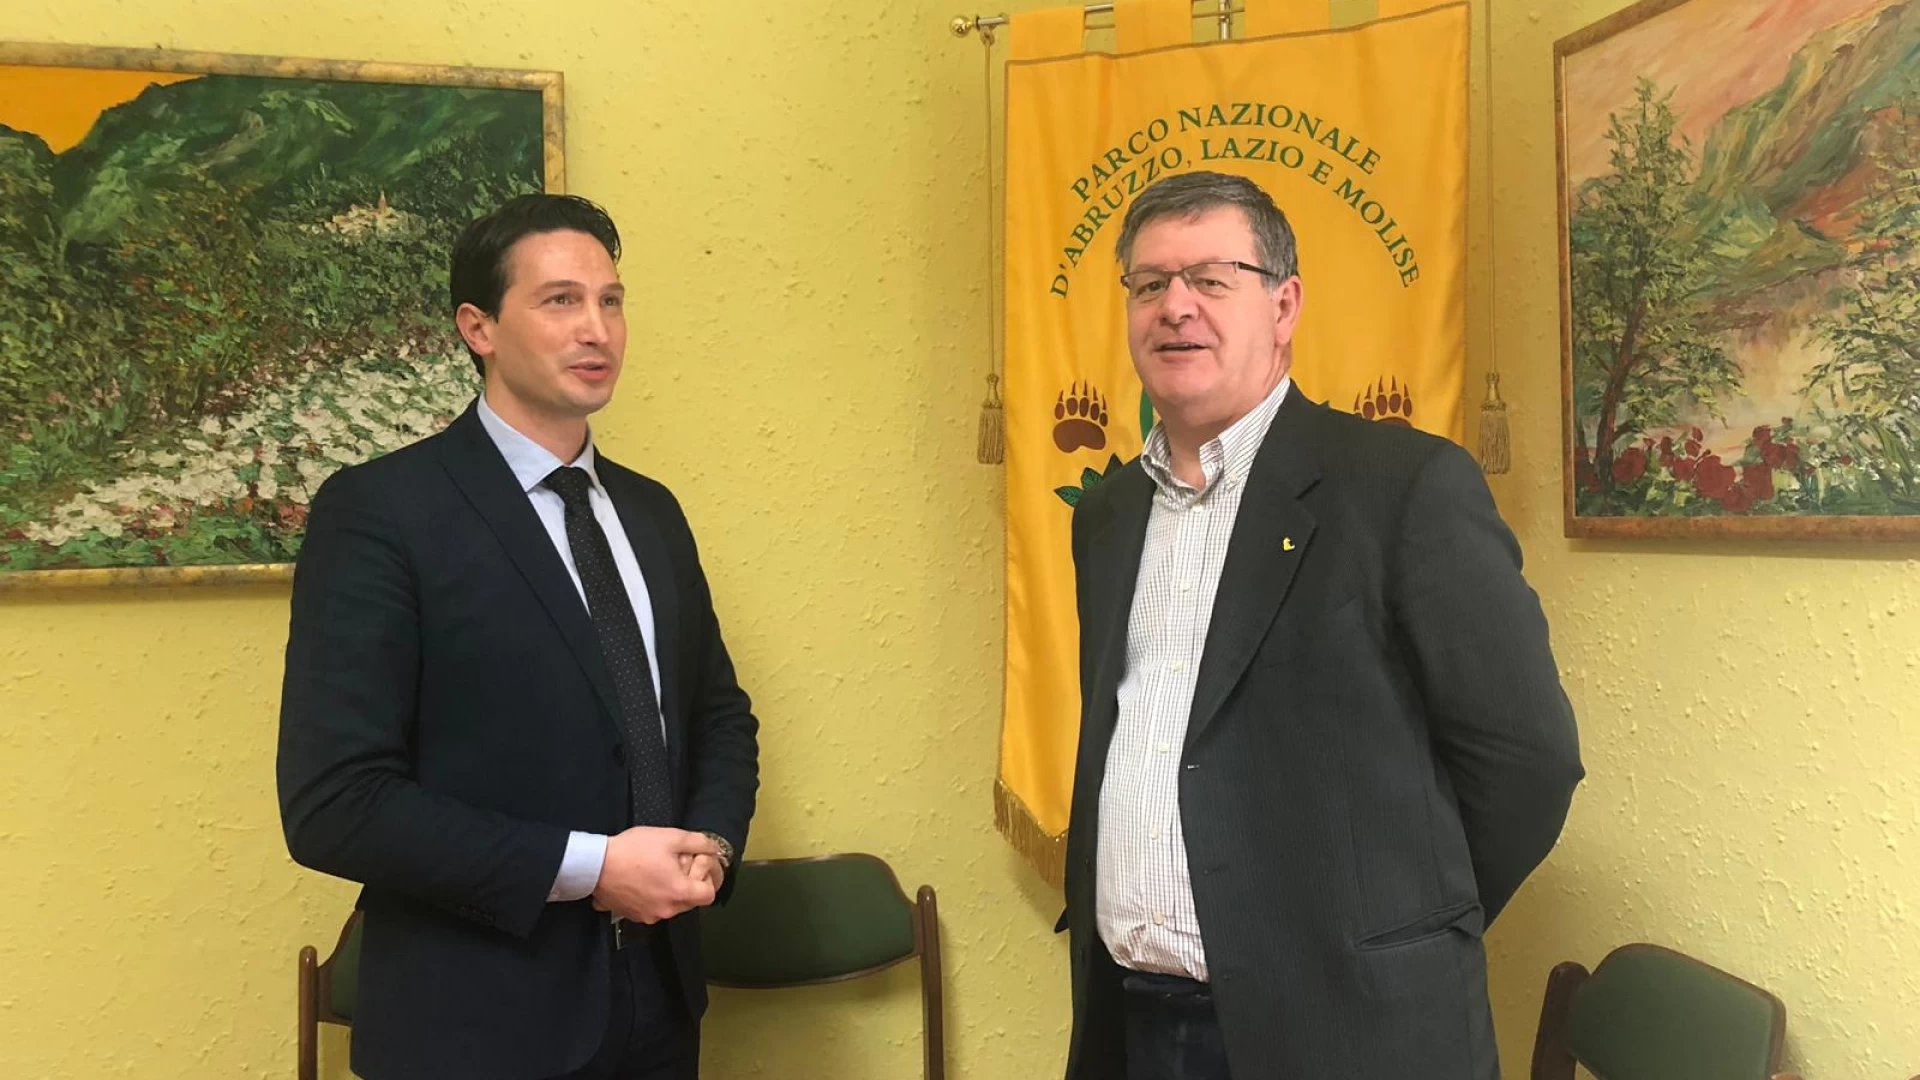 Giovanni Cannata nuovo presidente del Parco Nazionale di Abruzzo, Lazio e Molise: gli auguri del consigliere Tedeschi